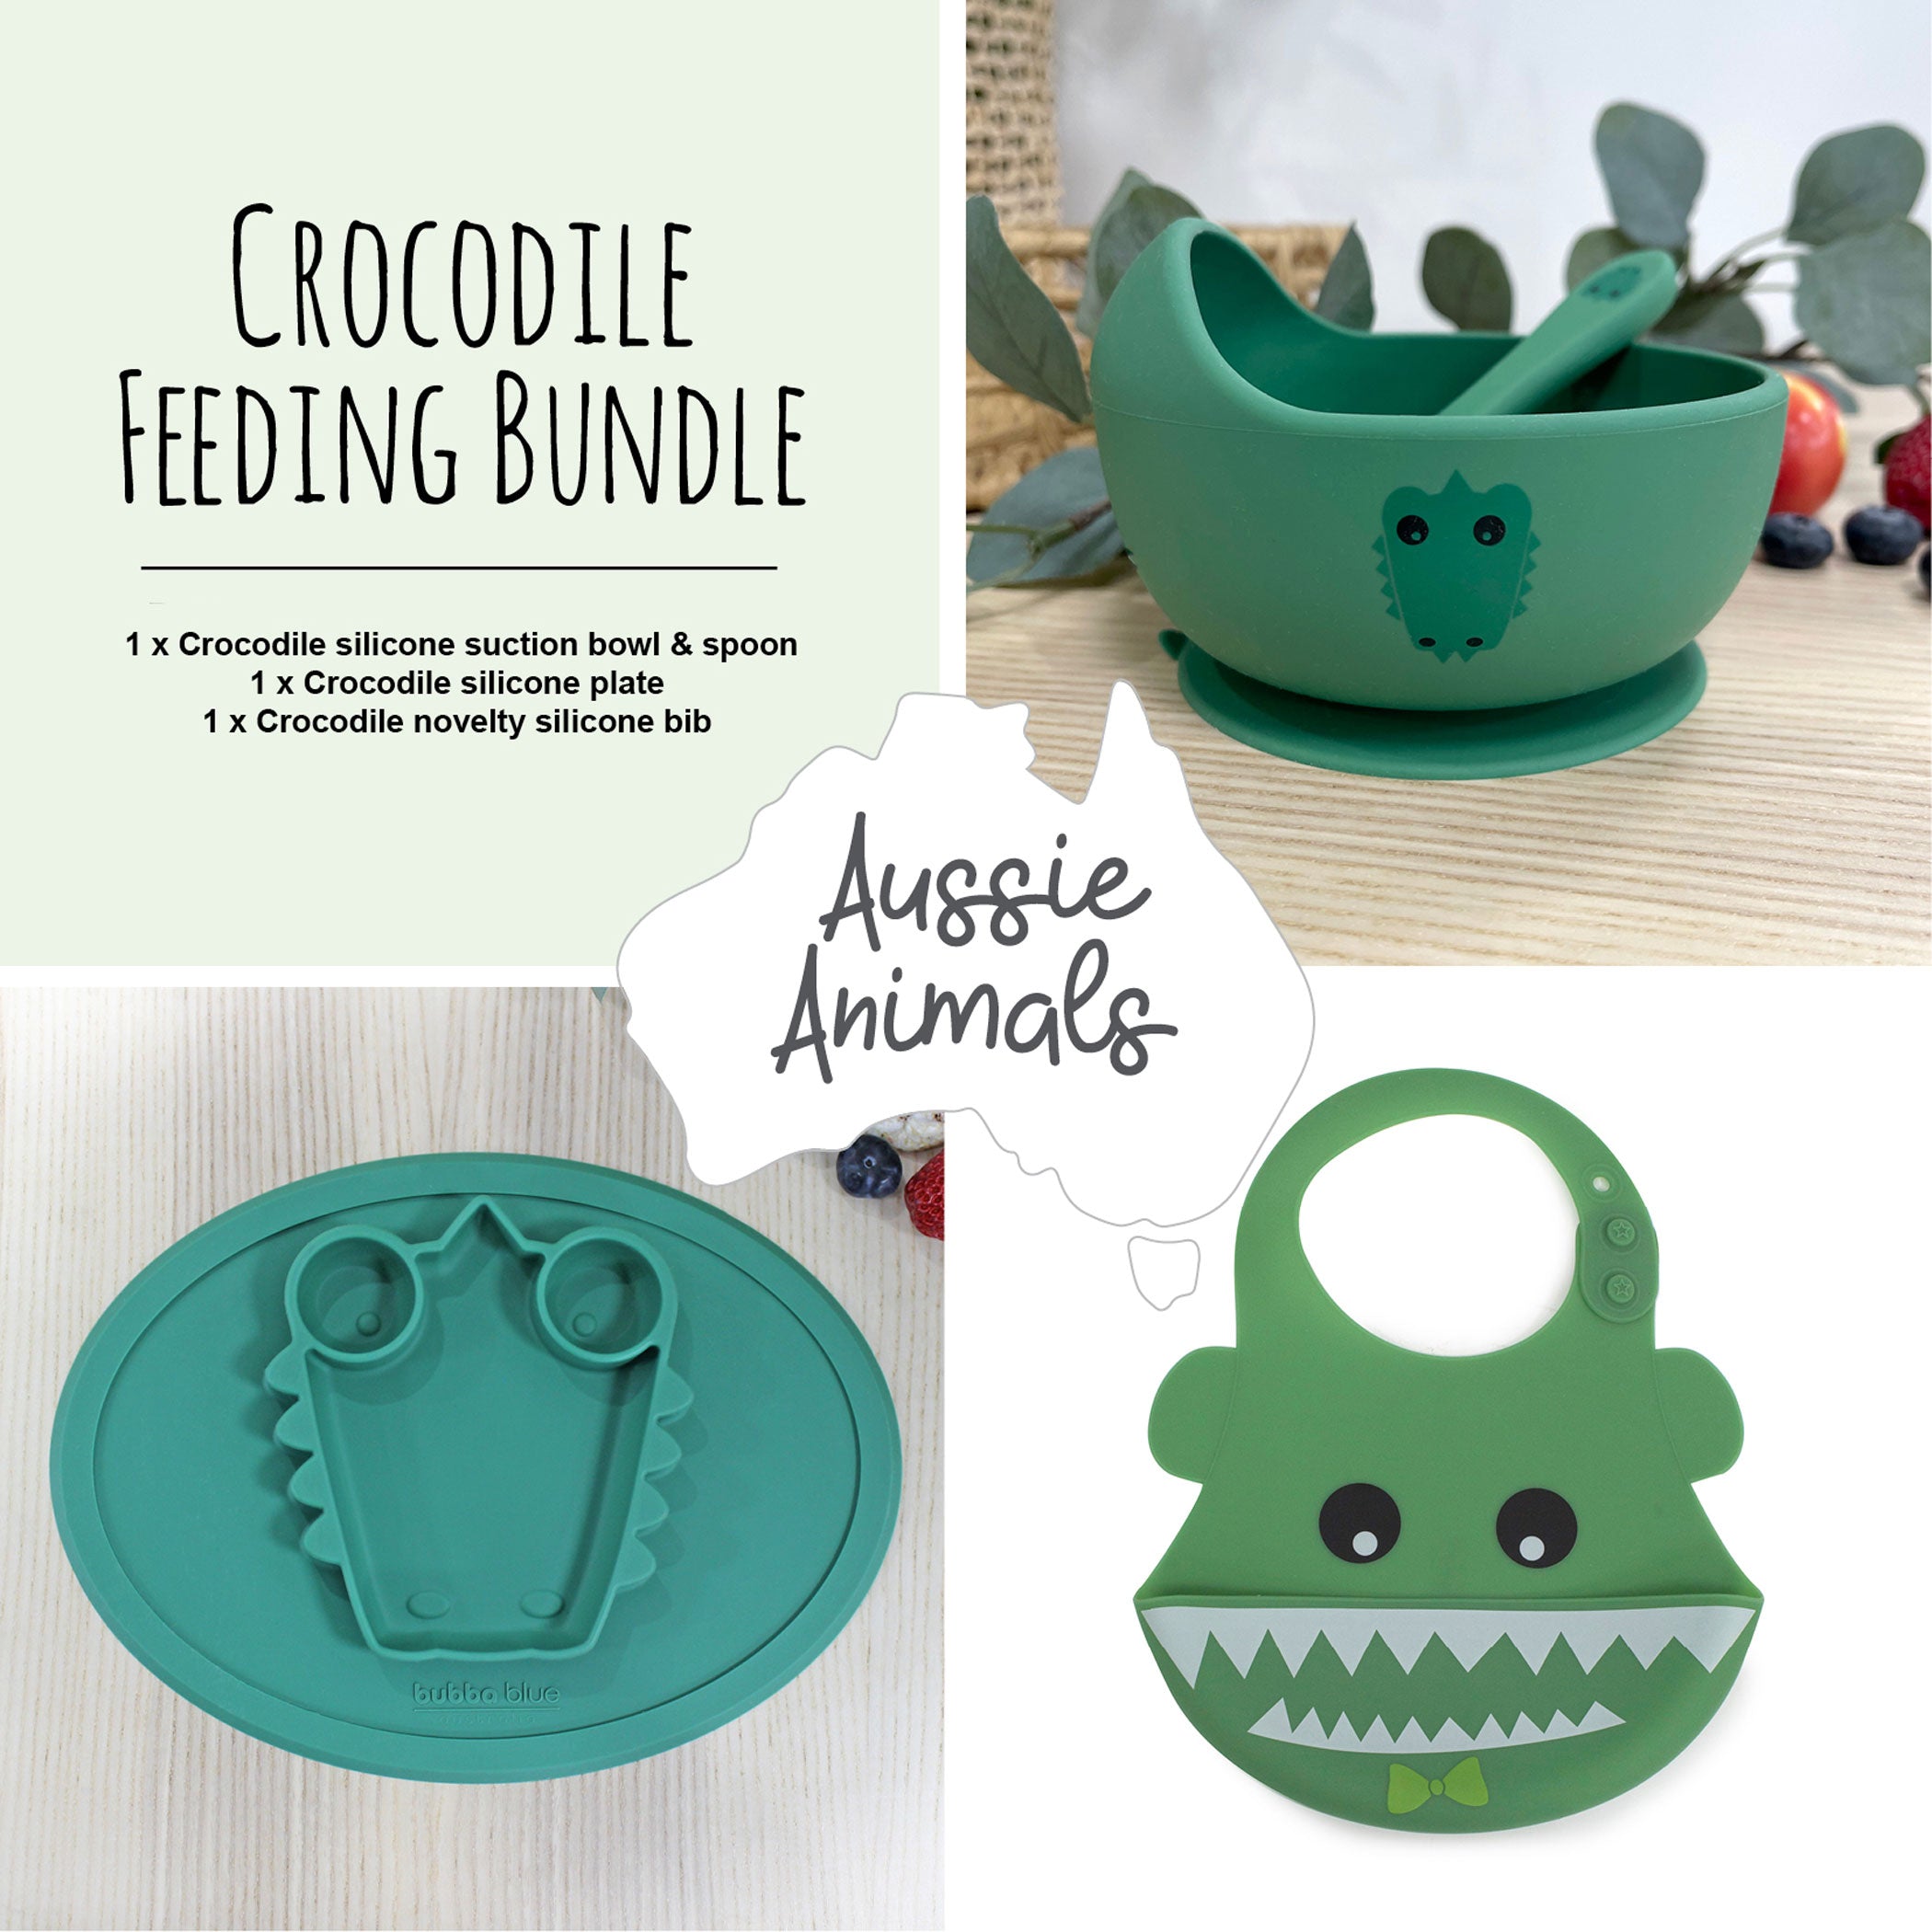 Aussie Animals 'Crocodile' Feeding Bundle - Silicone Bowl & Spoon, Plate and Bib